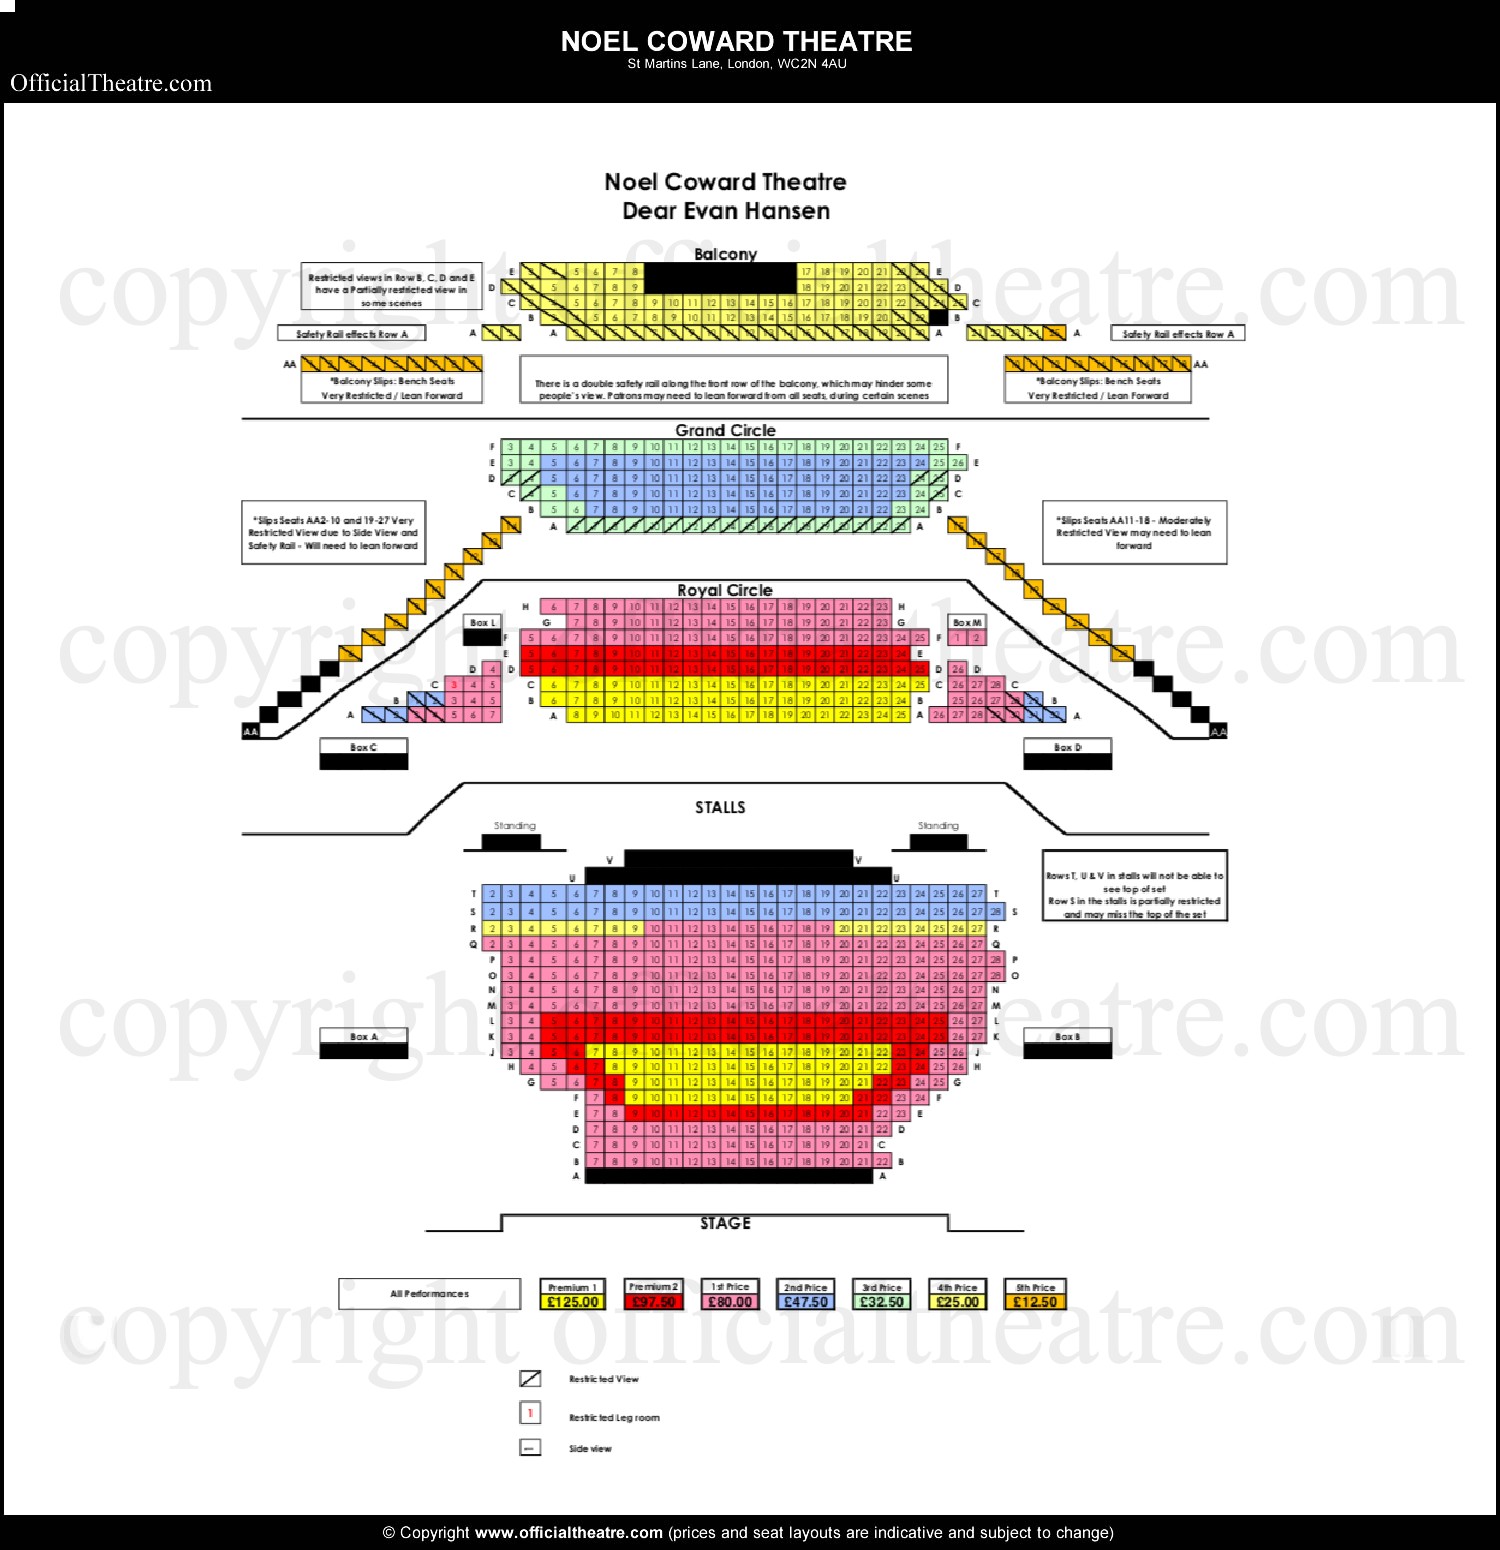 Noel Coward Theatre seating plan